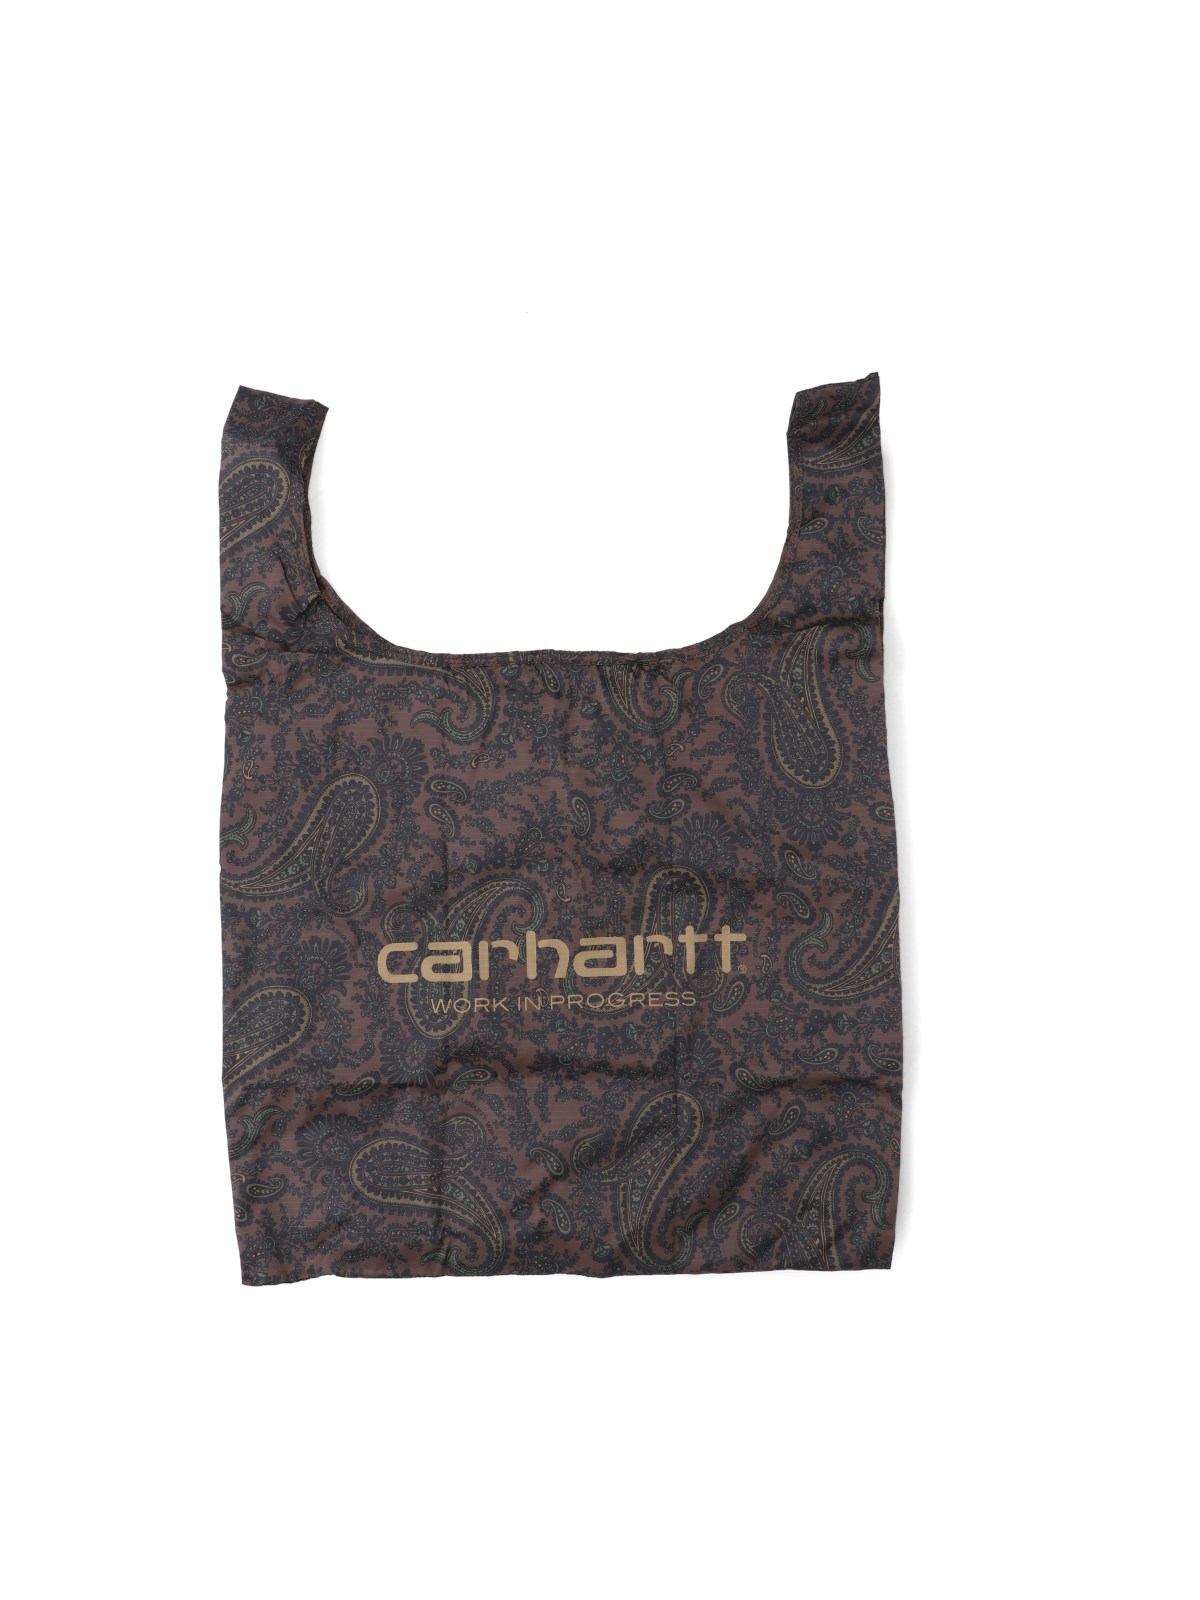 Carhartt 'paisley' Tote Bag In Brown